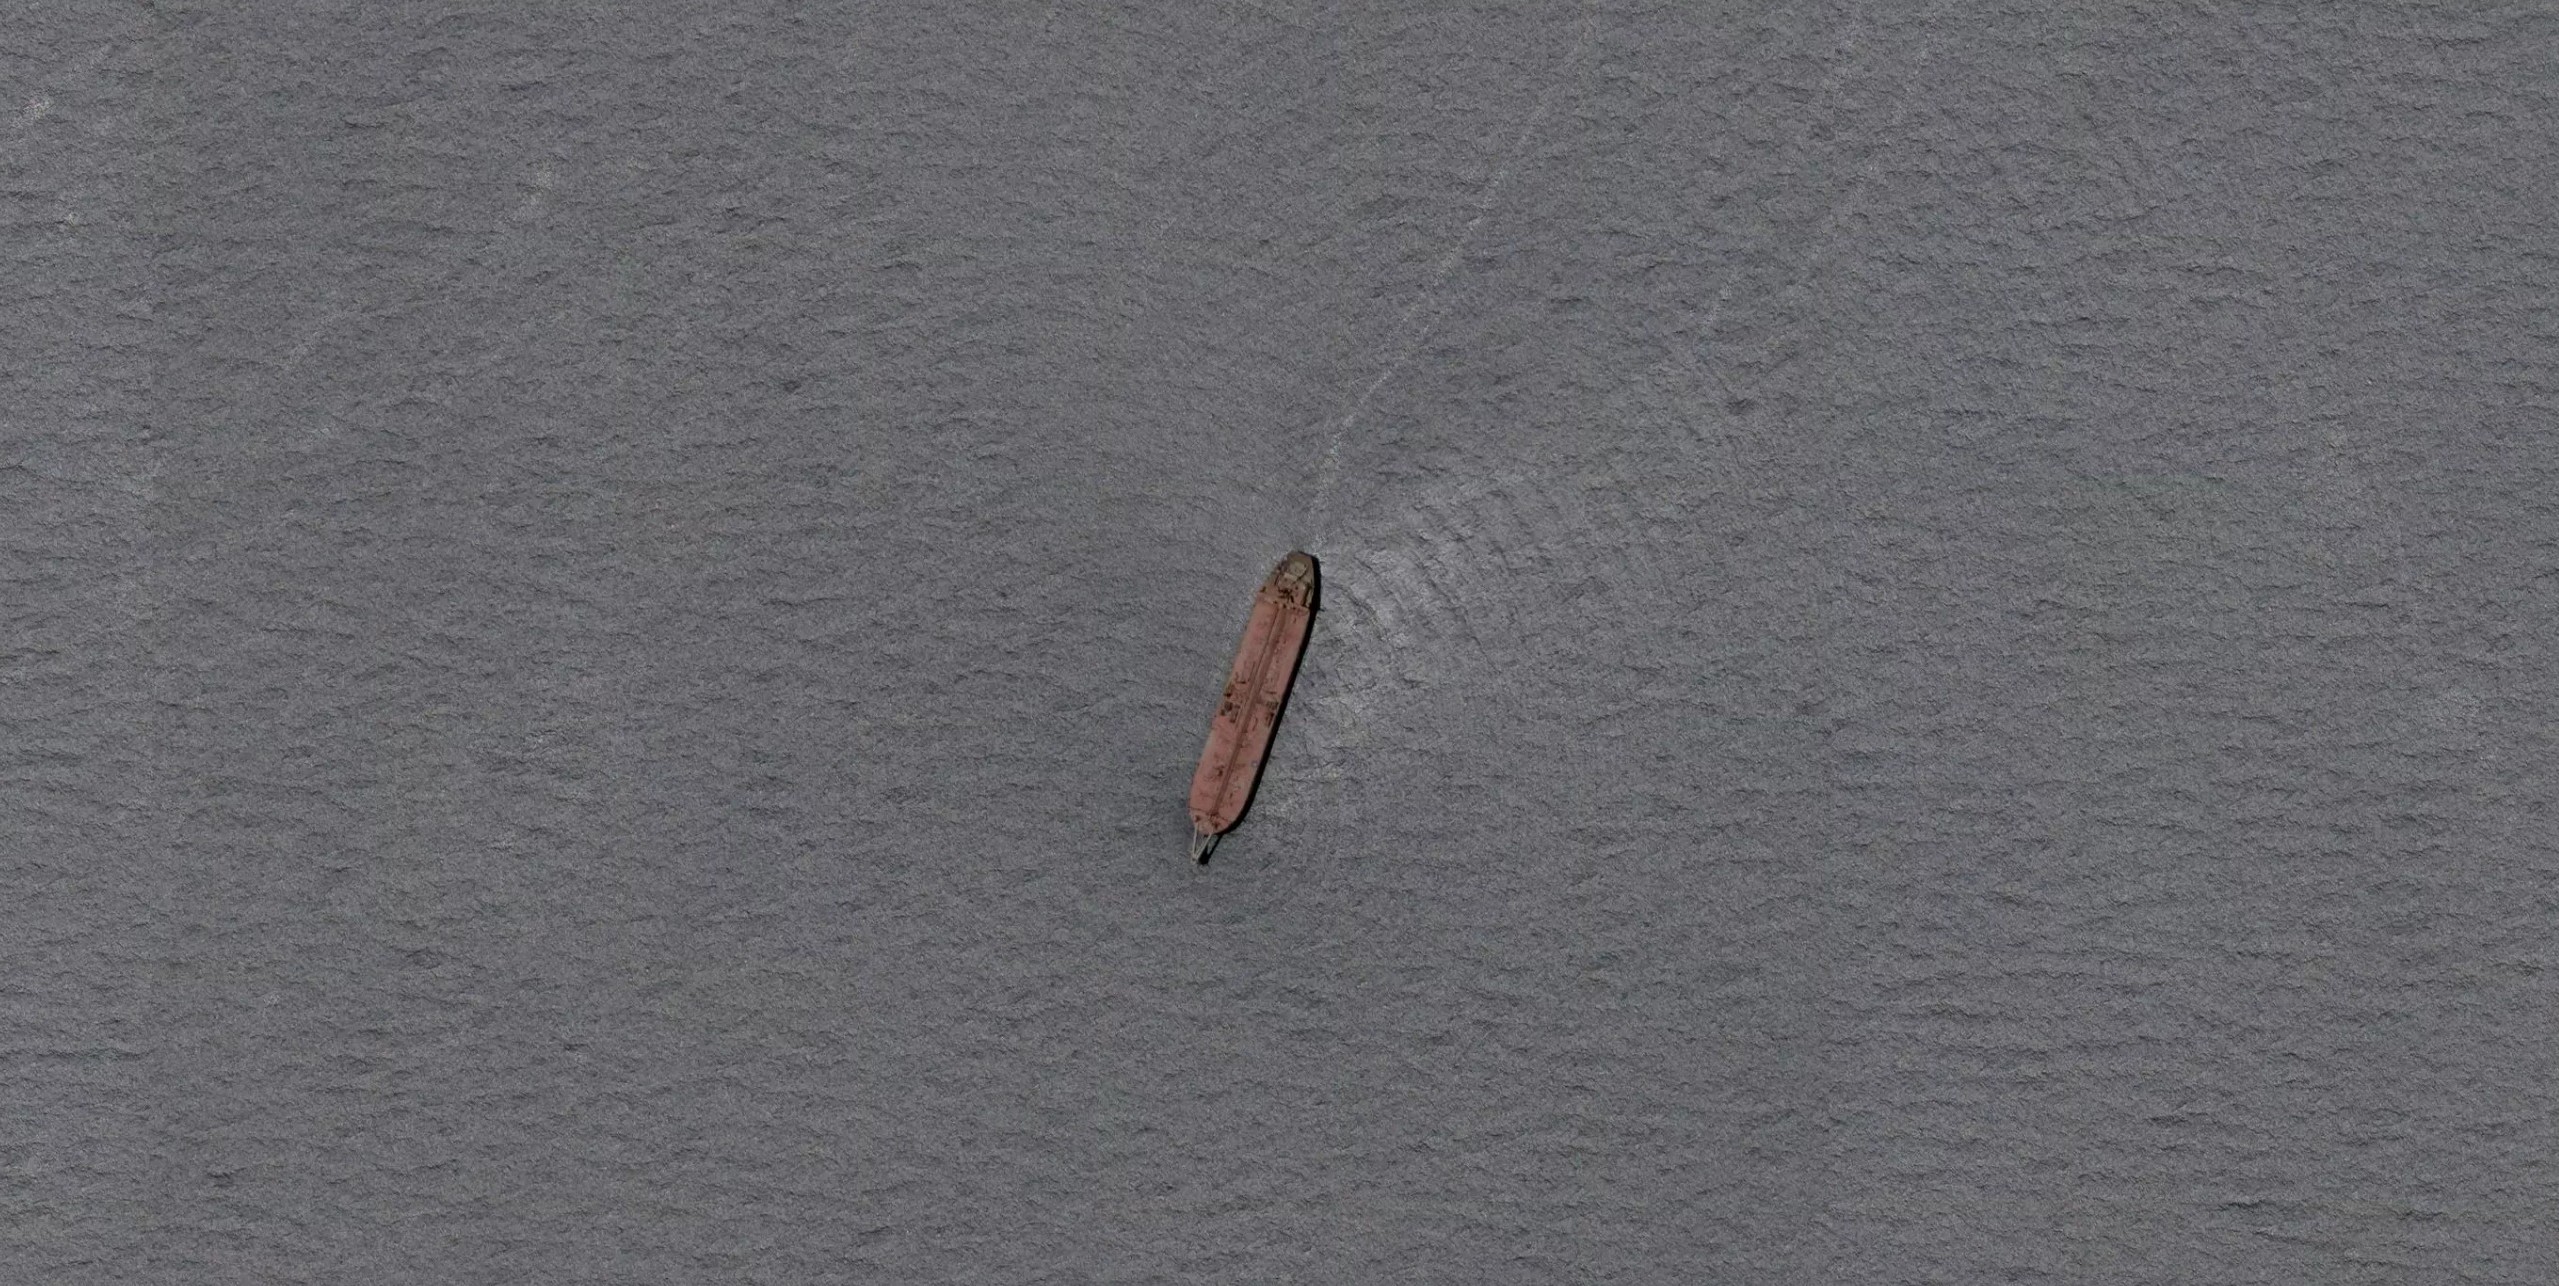 Satellitenbild der FSO Safer im Roten Meer